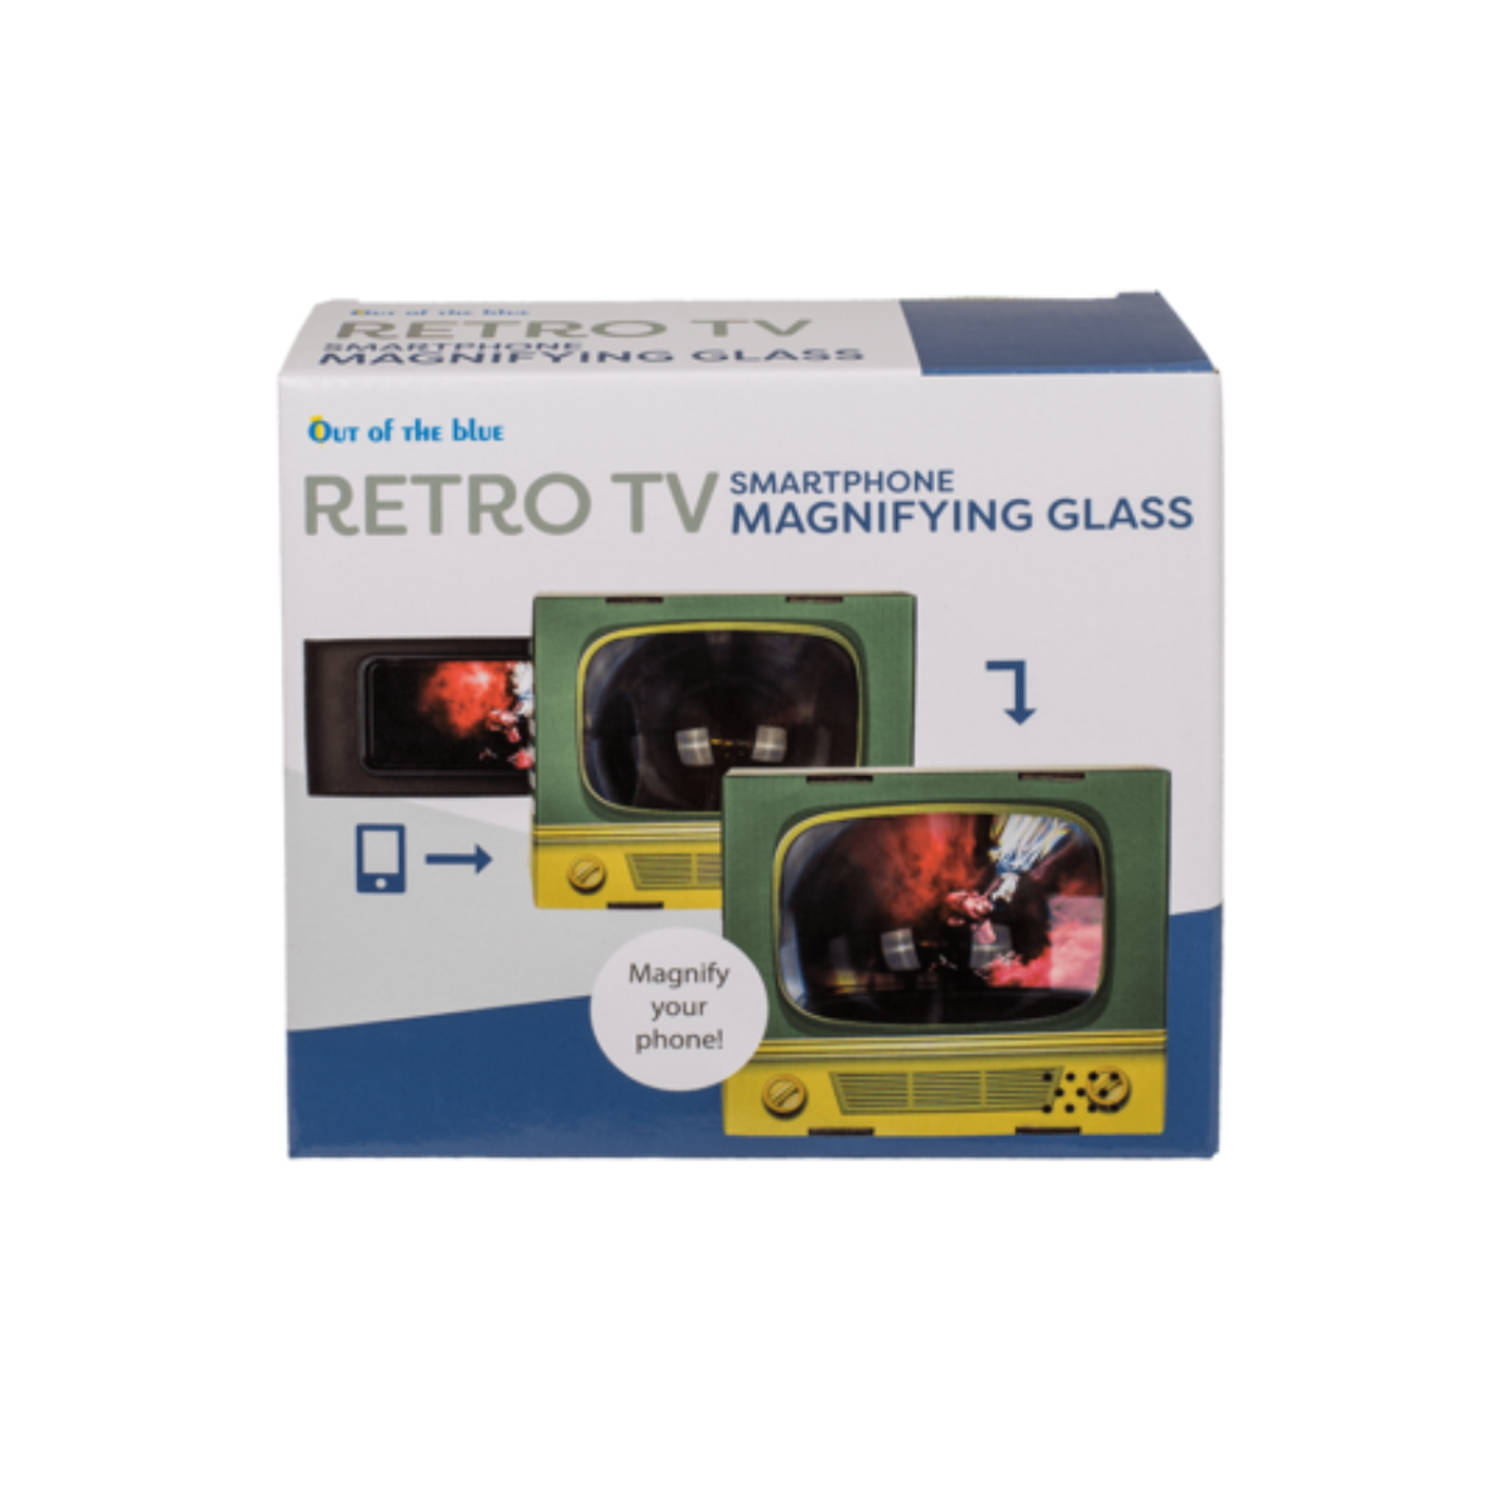 Retro televisie voor je telefoon - Bouw je s/martphone om tot een retro televisie - Retro gadgets - Telefoon gadgets -